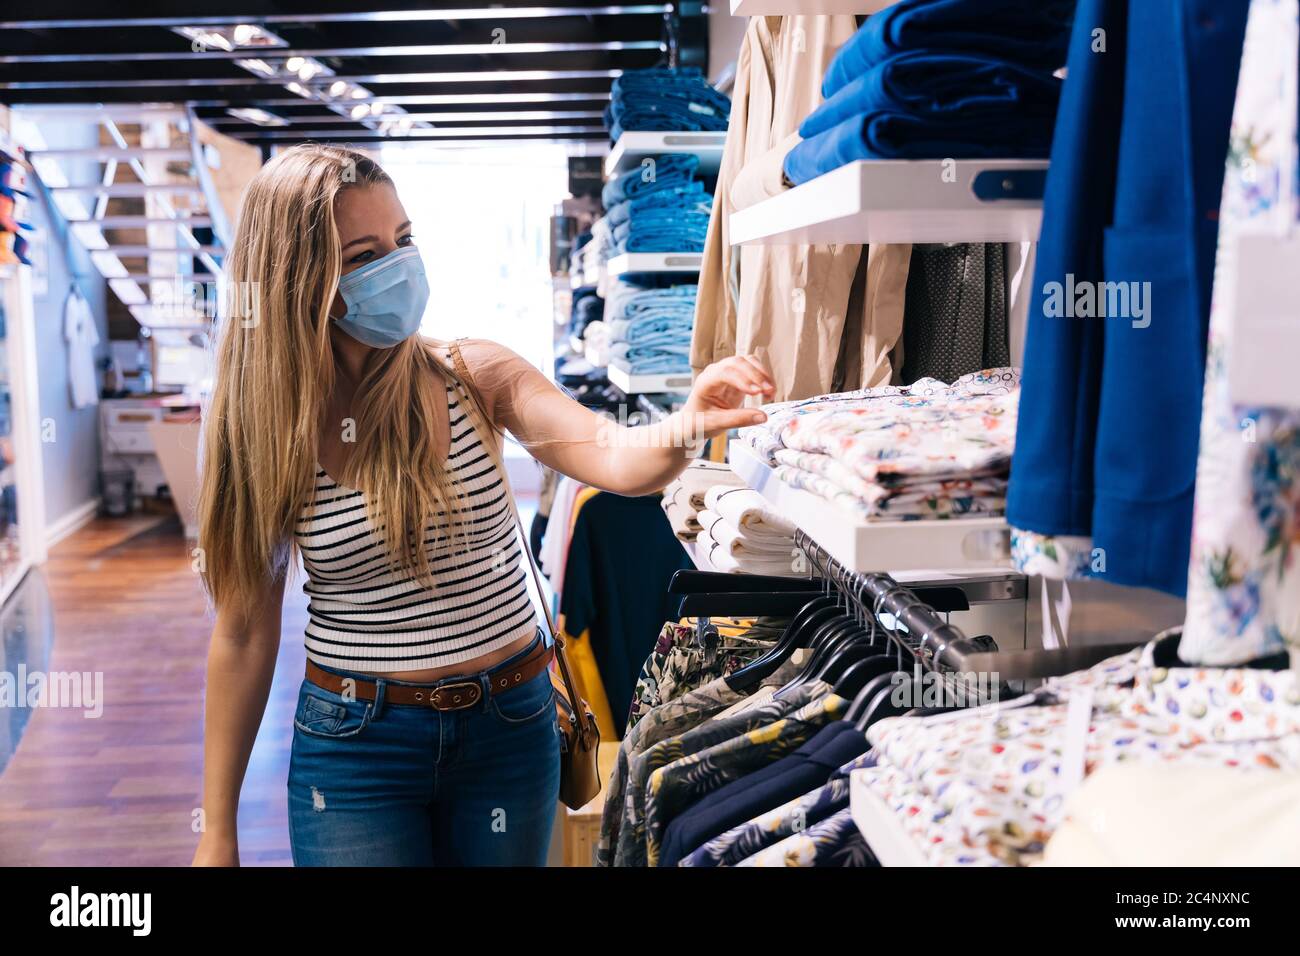 Junge Frau in Maske einkaufen in einem Bekleidungsgeschäft in der Coronavirus-Pandemie Stockfoto